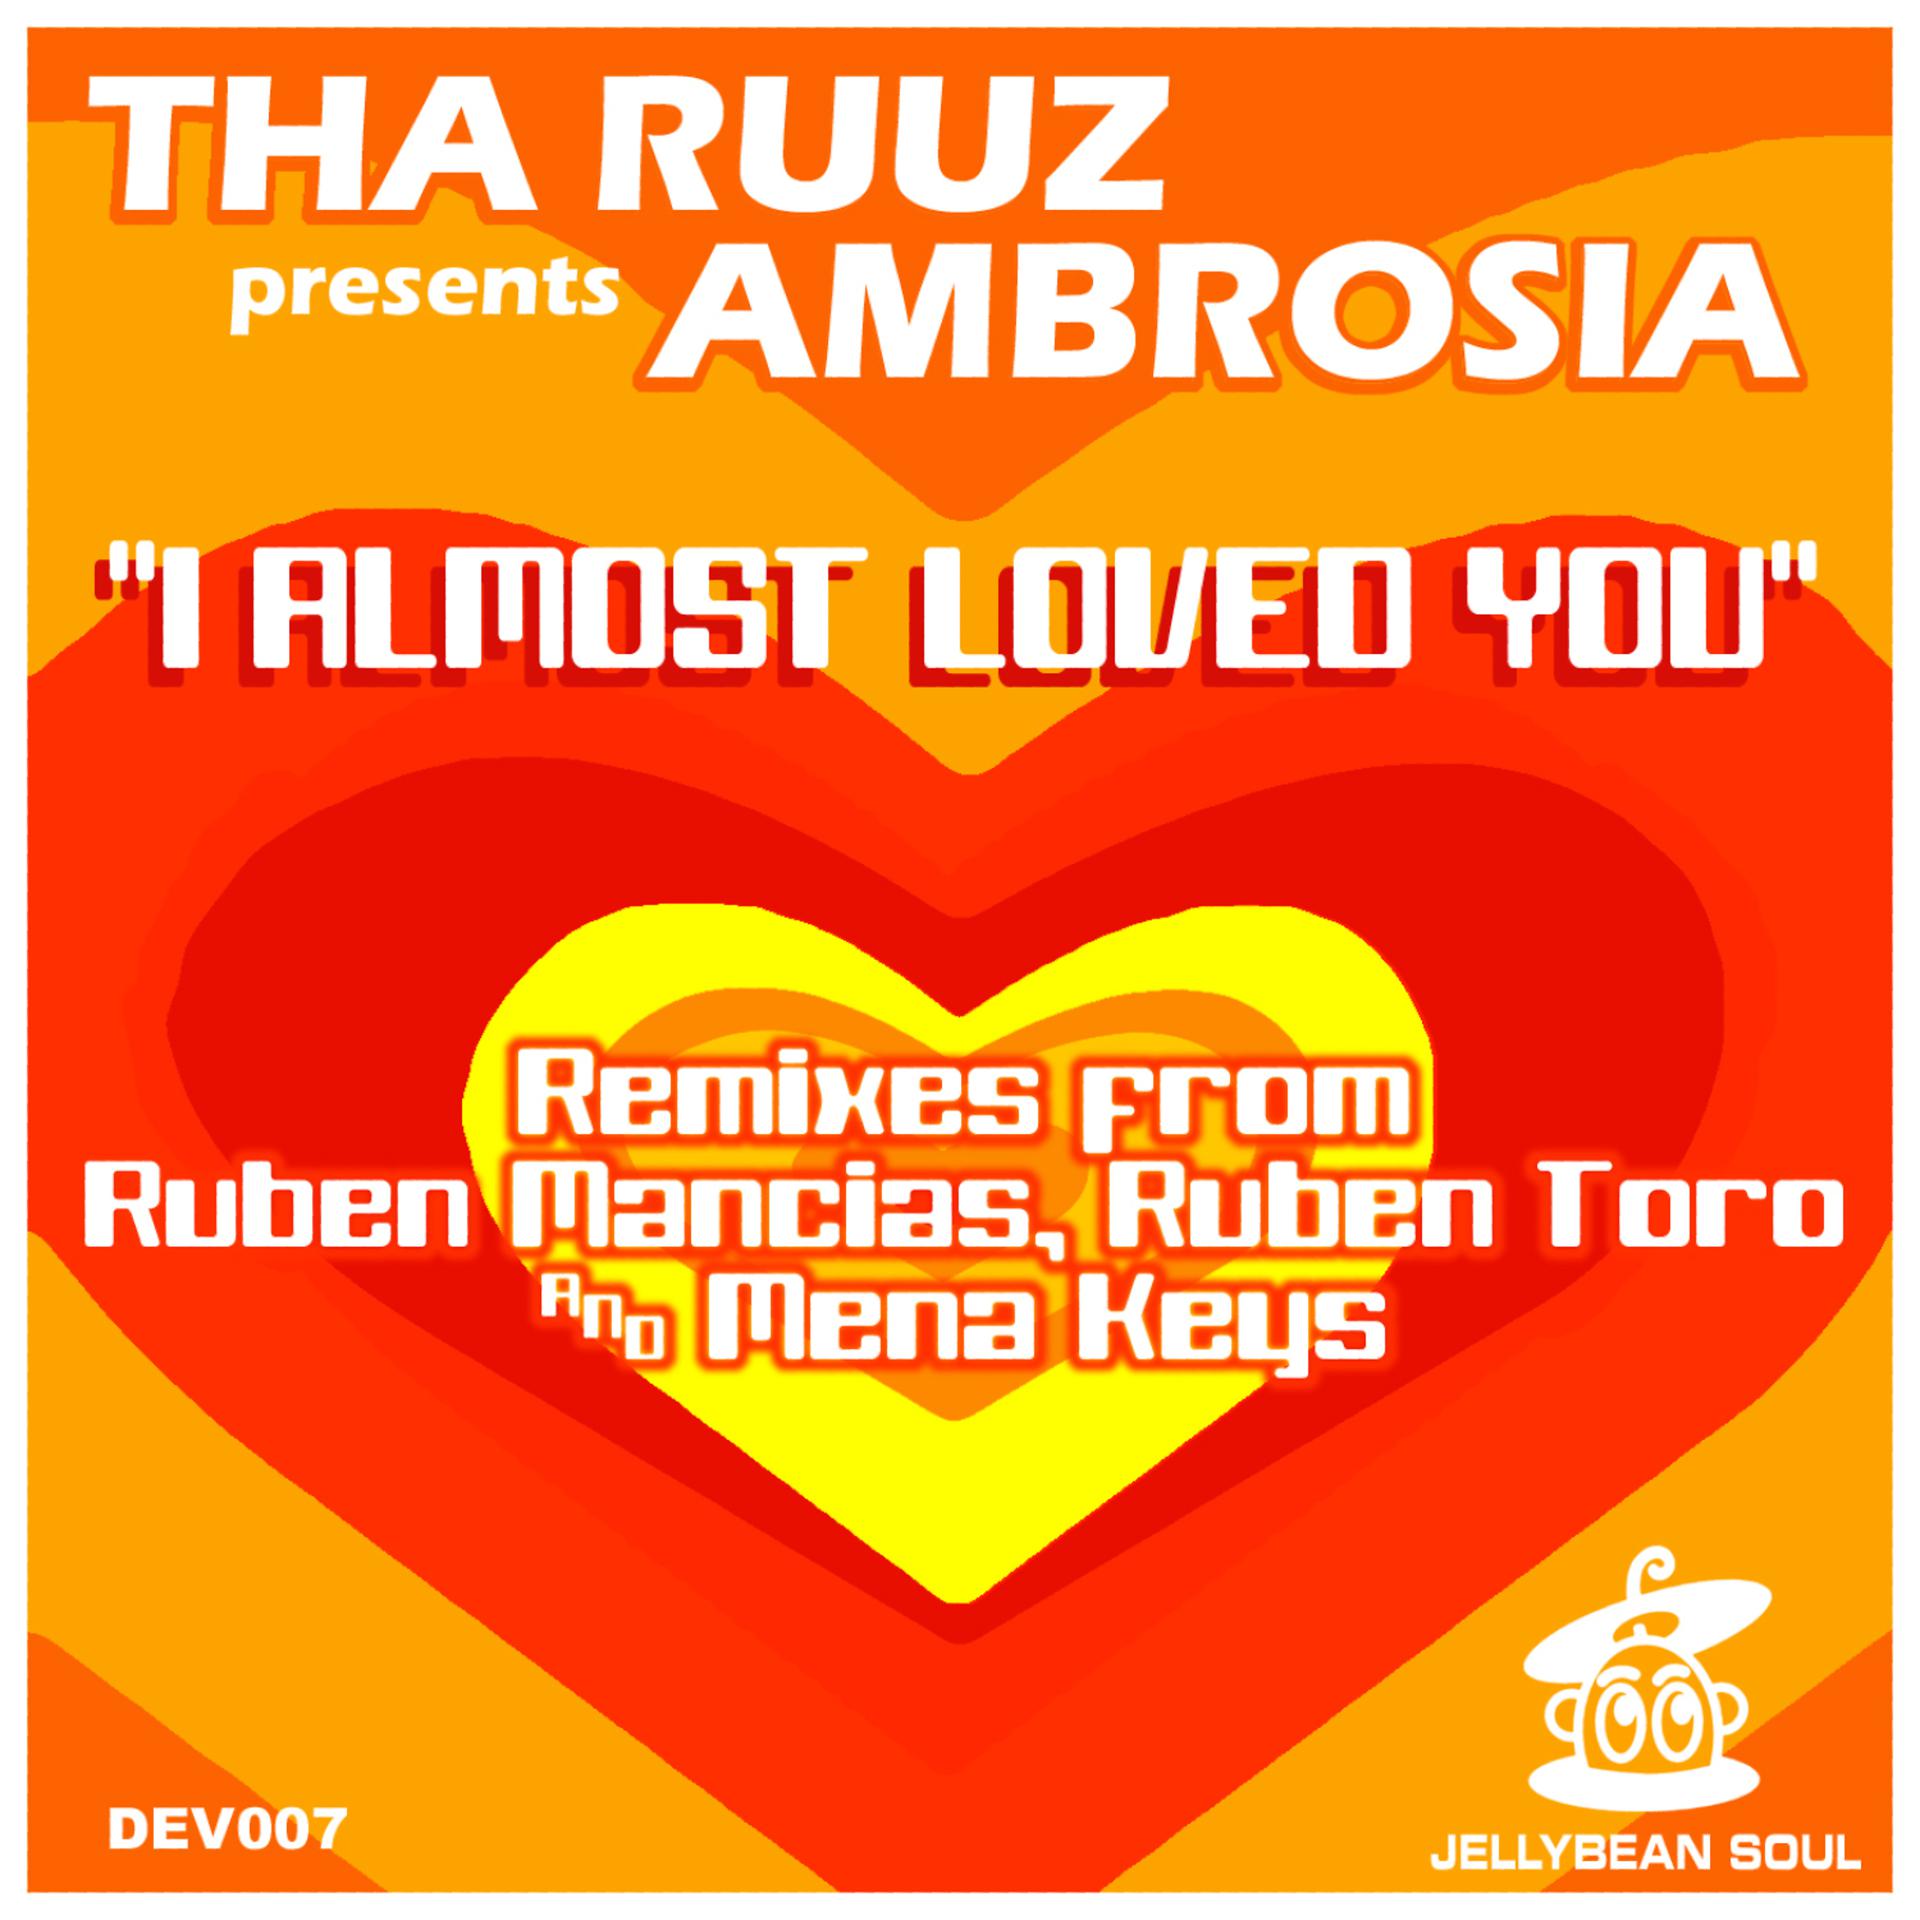 Постер к треку Tha Ruuz, Ambrosia - I Almost Loved You